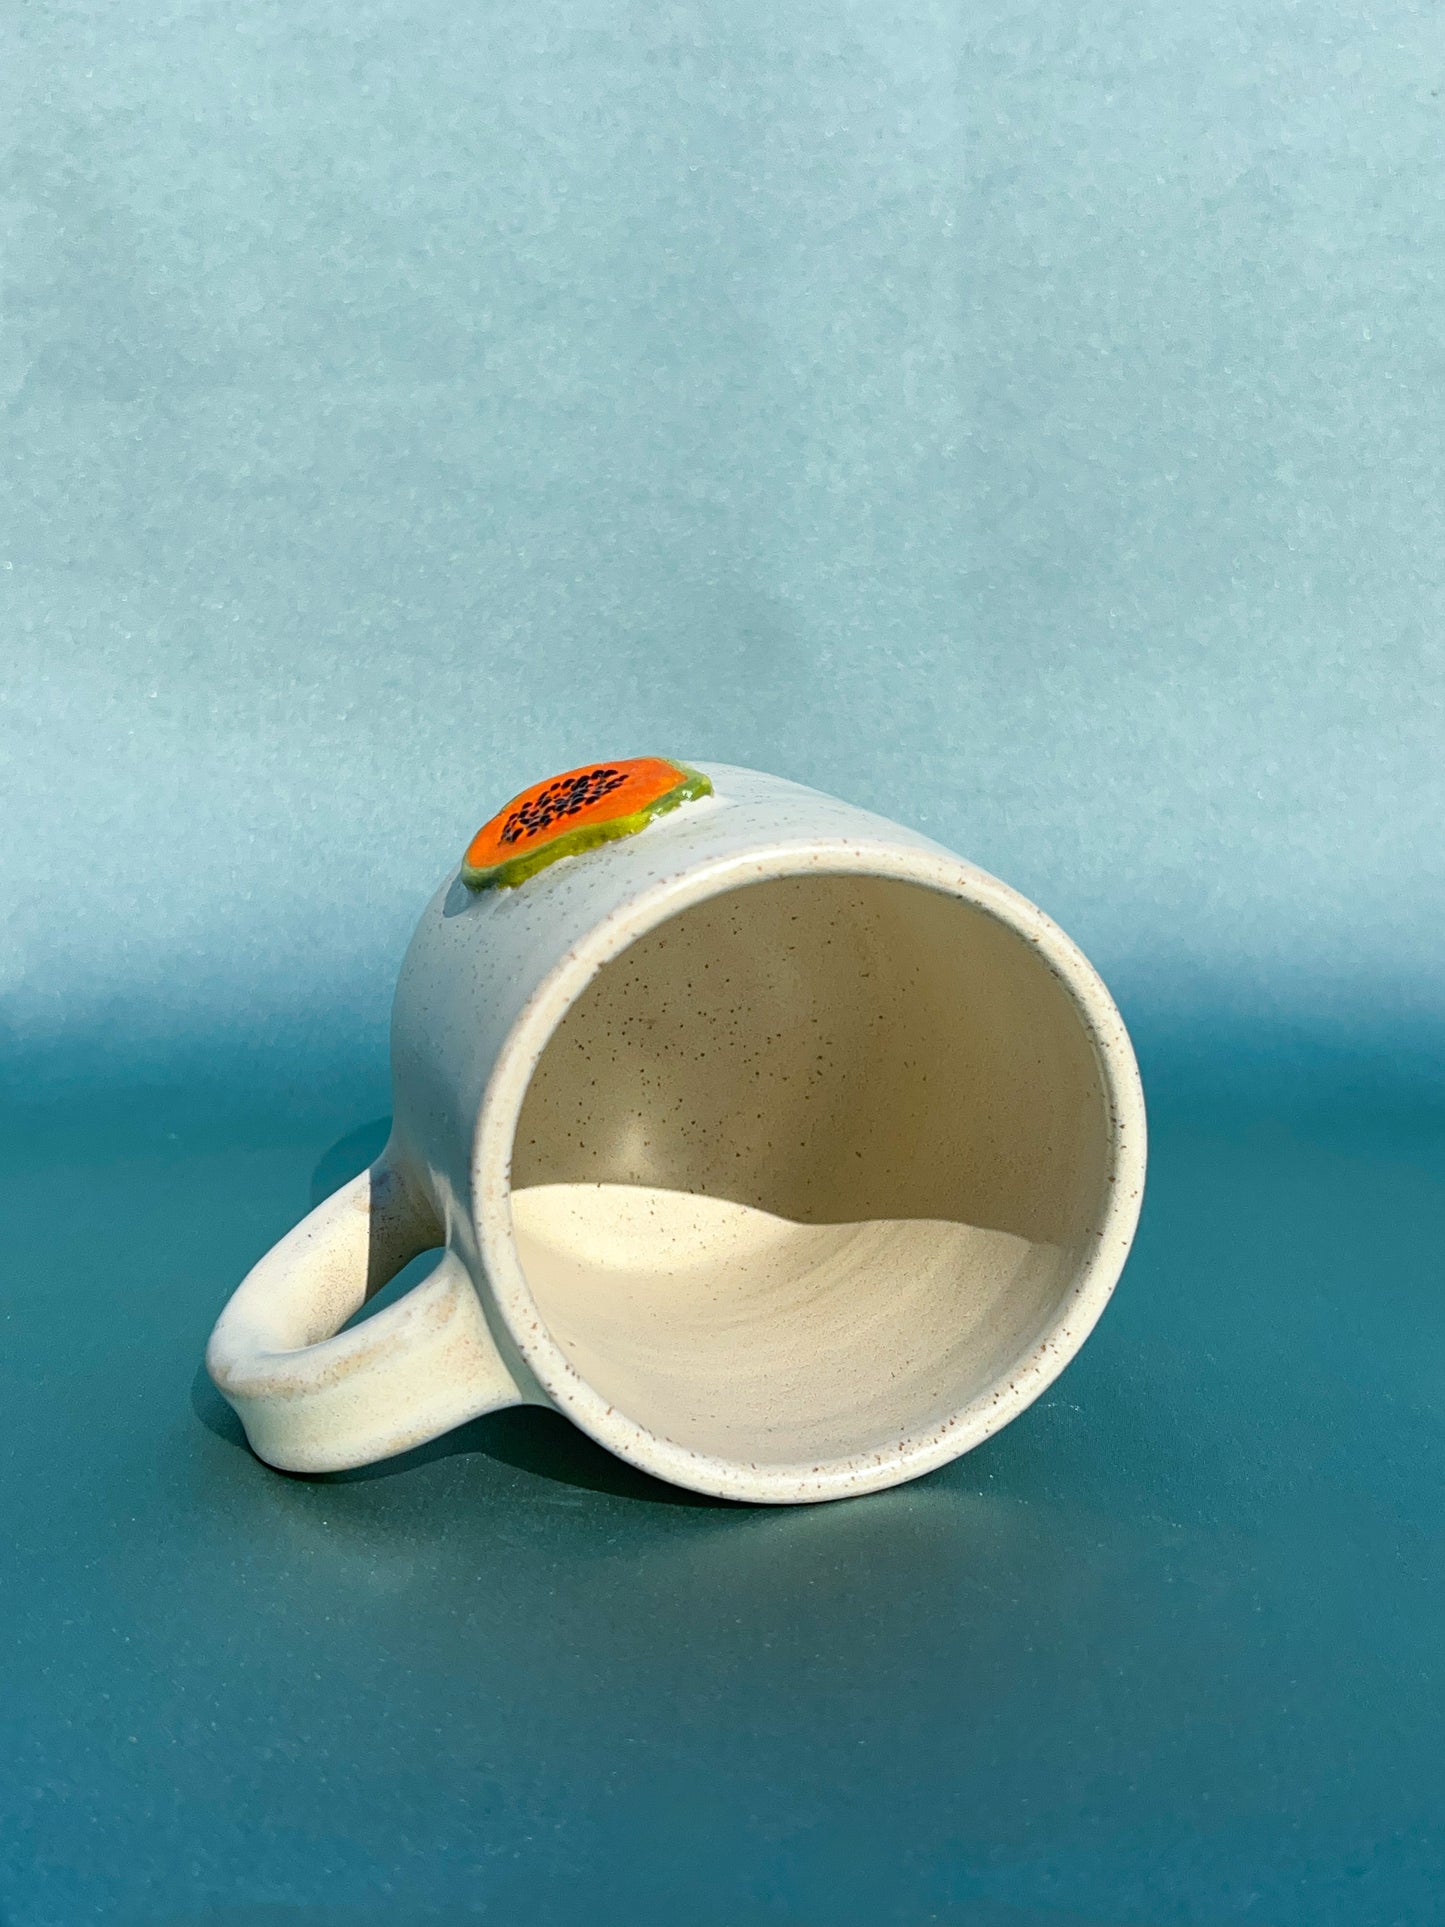 Speckle Papaya Mug